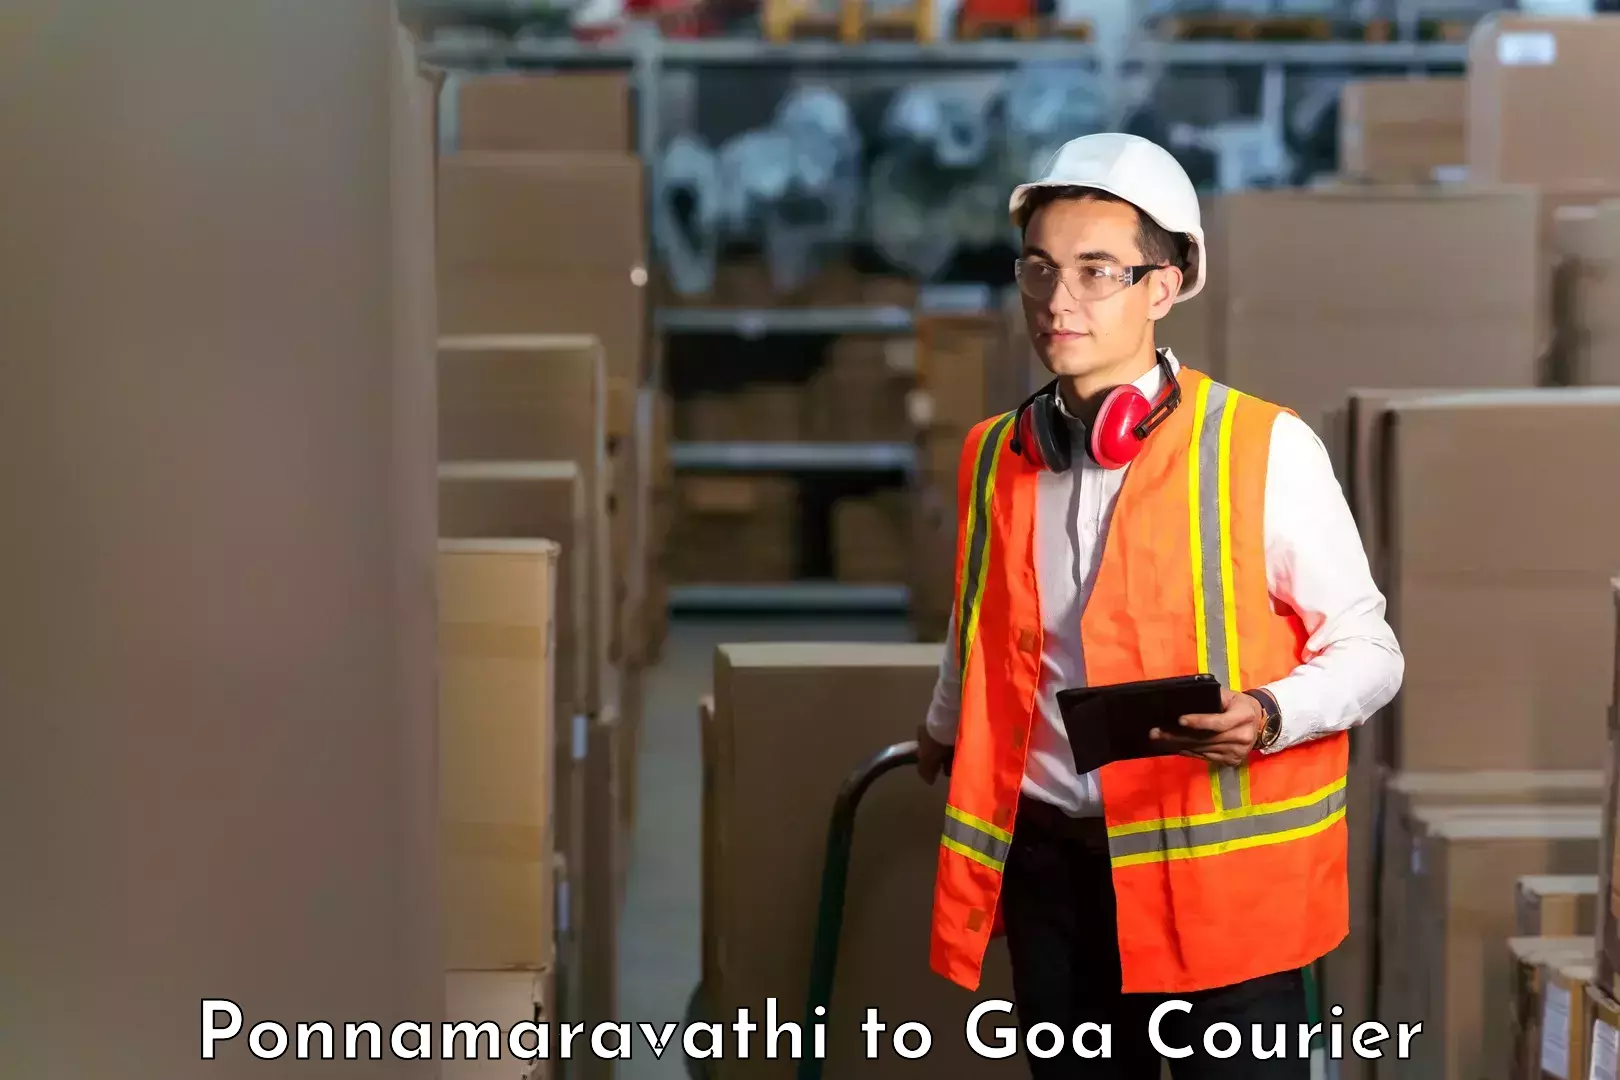 Large package courier Ponnamaravathi to IIT Goa